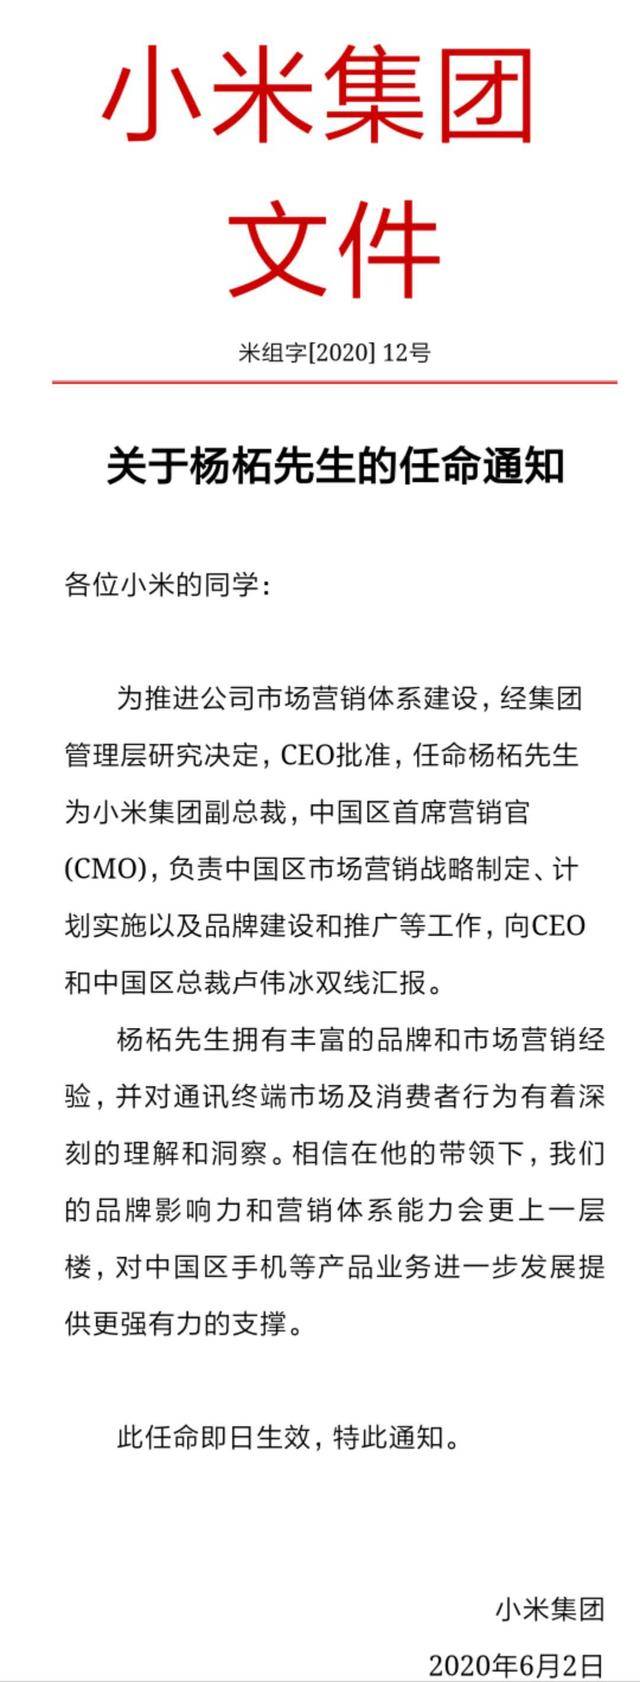 中国区小米任命杨柘出任中国区CMO 向雷军与卢伟冰双线汇报